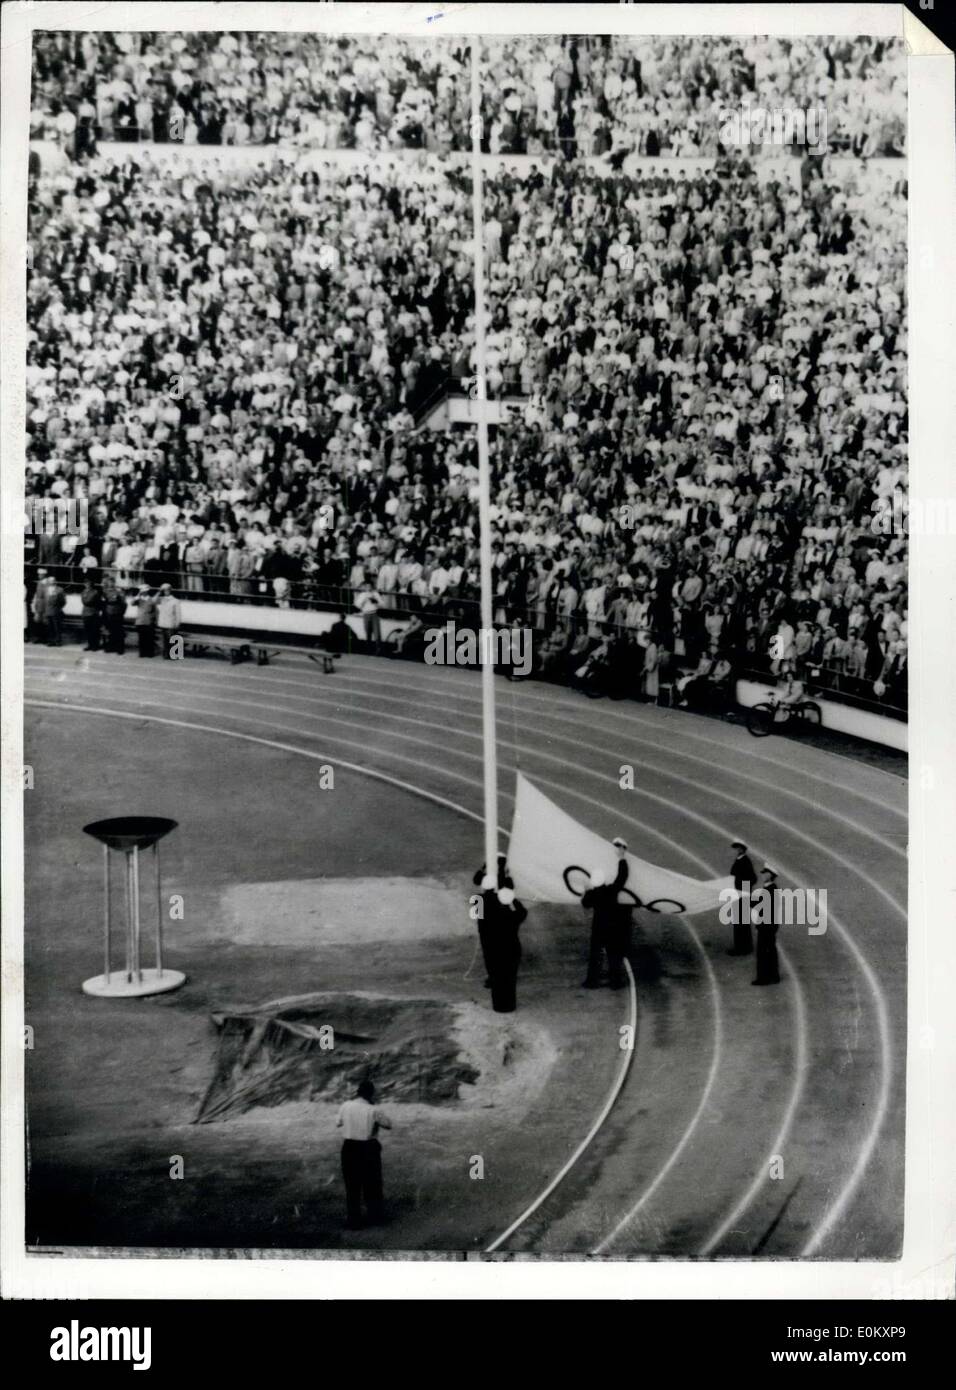 8. August 1952 - die Olympischen Spiele zu beenden, schleppen hinunter die Flagge in Helsinki: Foto zeigt die Szene in der Helsinki-Stadion heute Abend wie die Olympische Flagge nach unten gezogen wird, um die Schließung der Olympiade 1952 zu markieren. Stockfoto